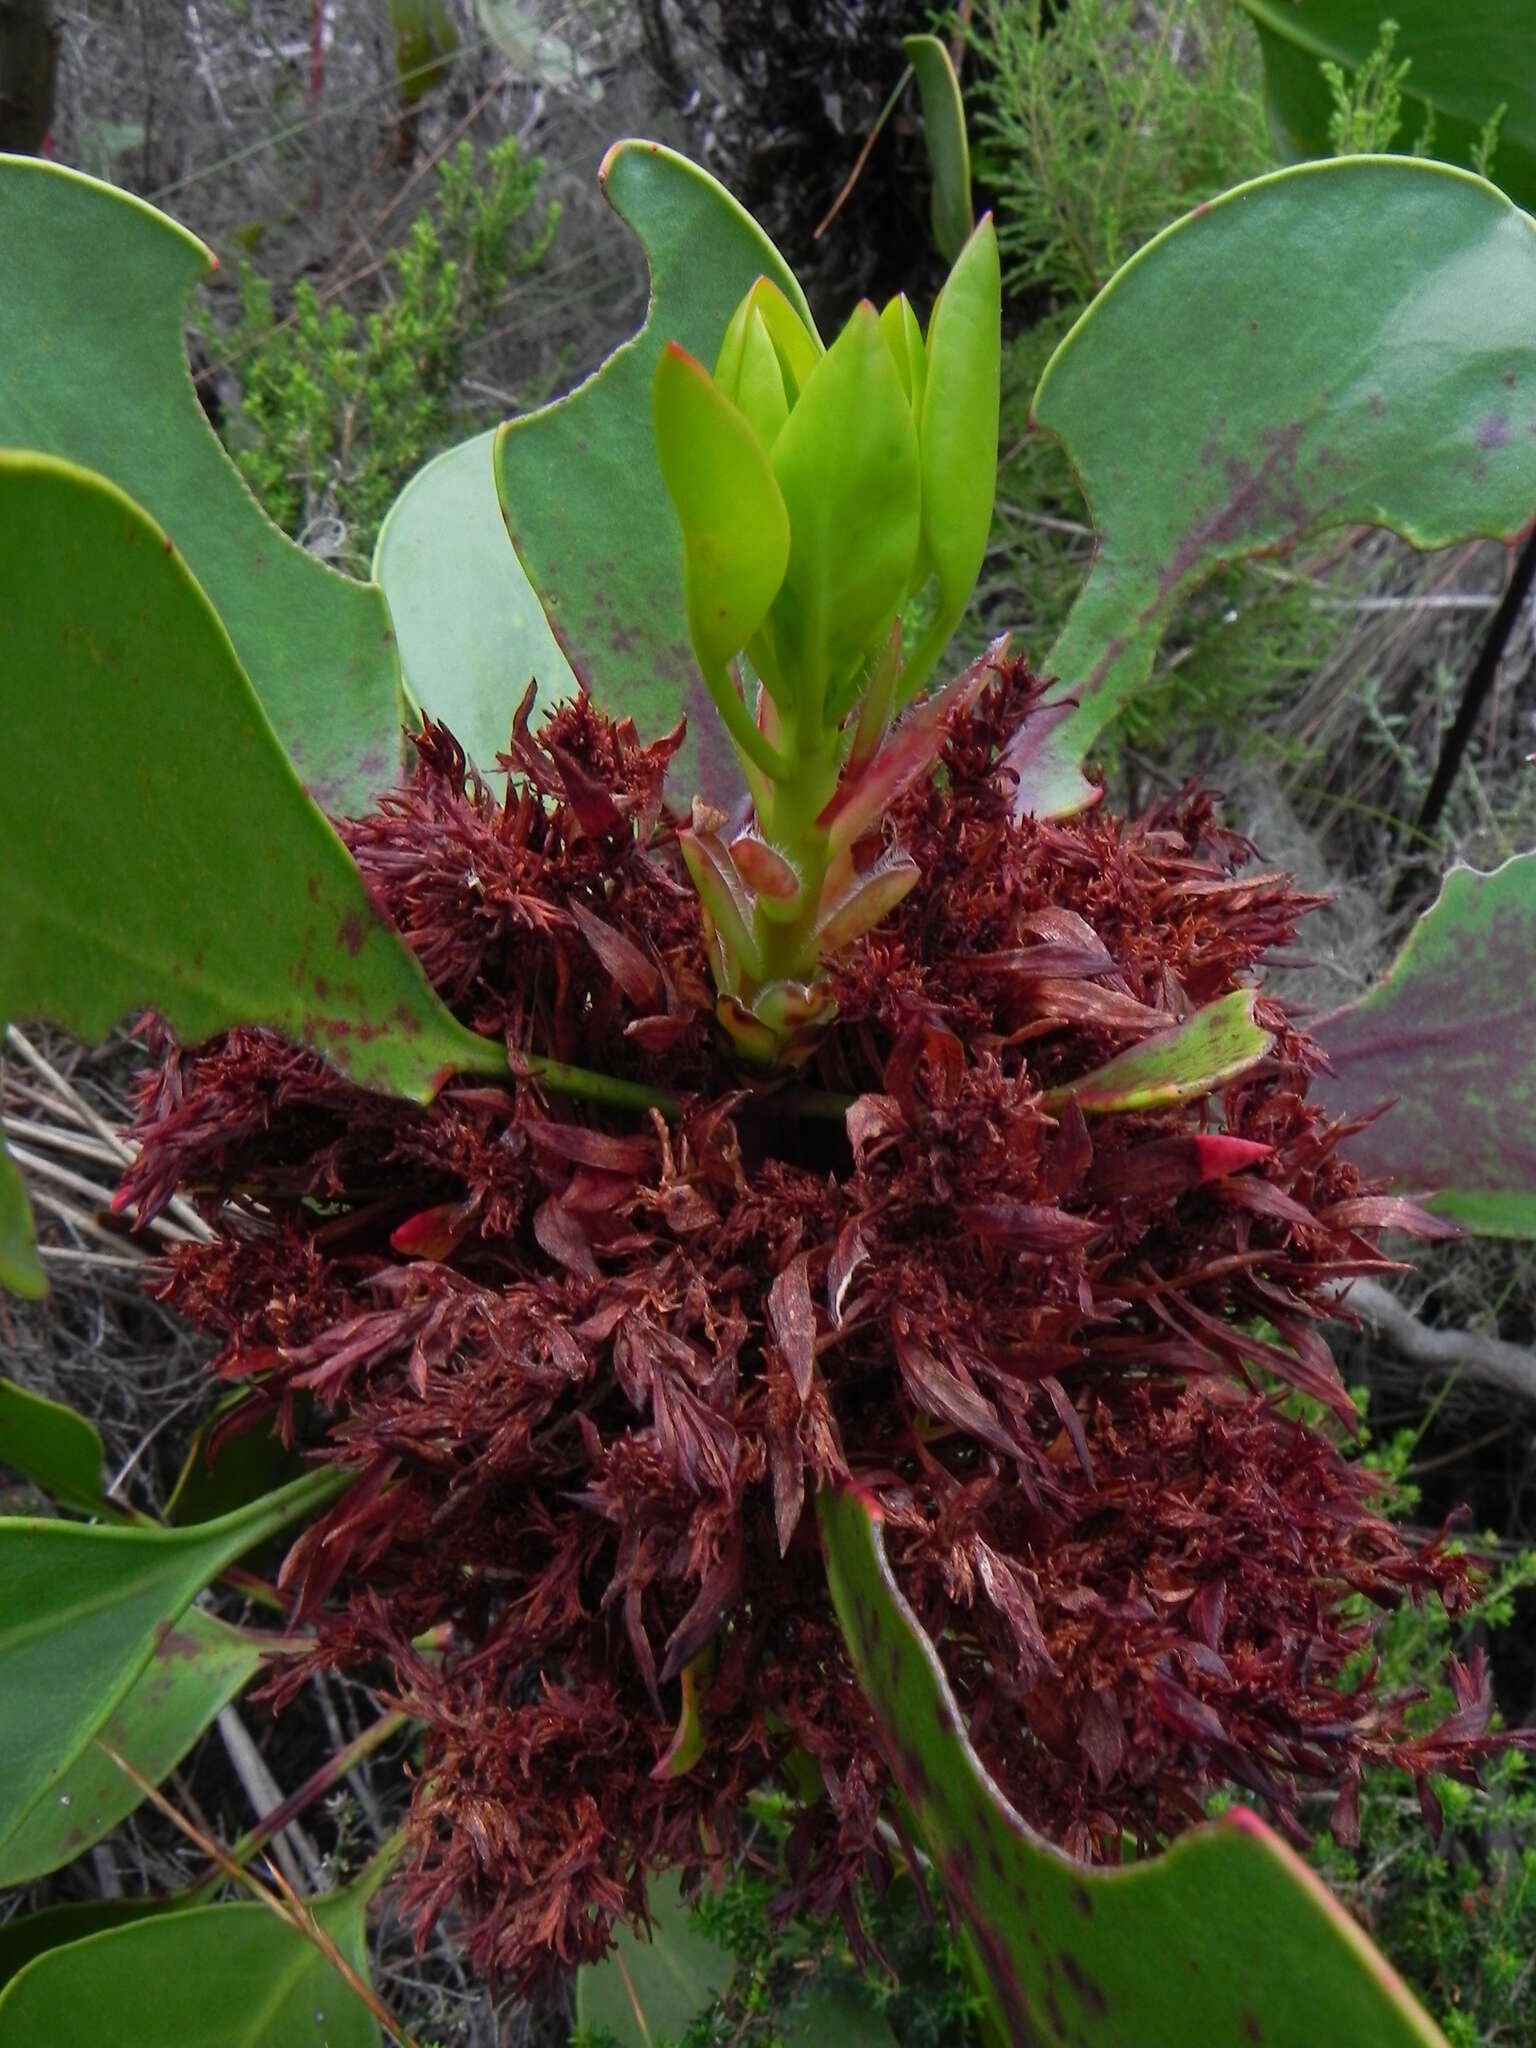 Image of Acholeplasmataceae